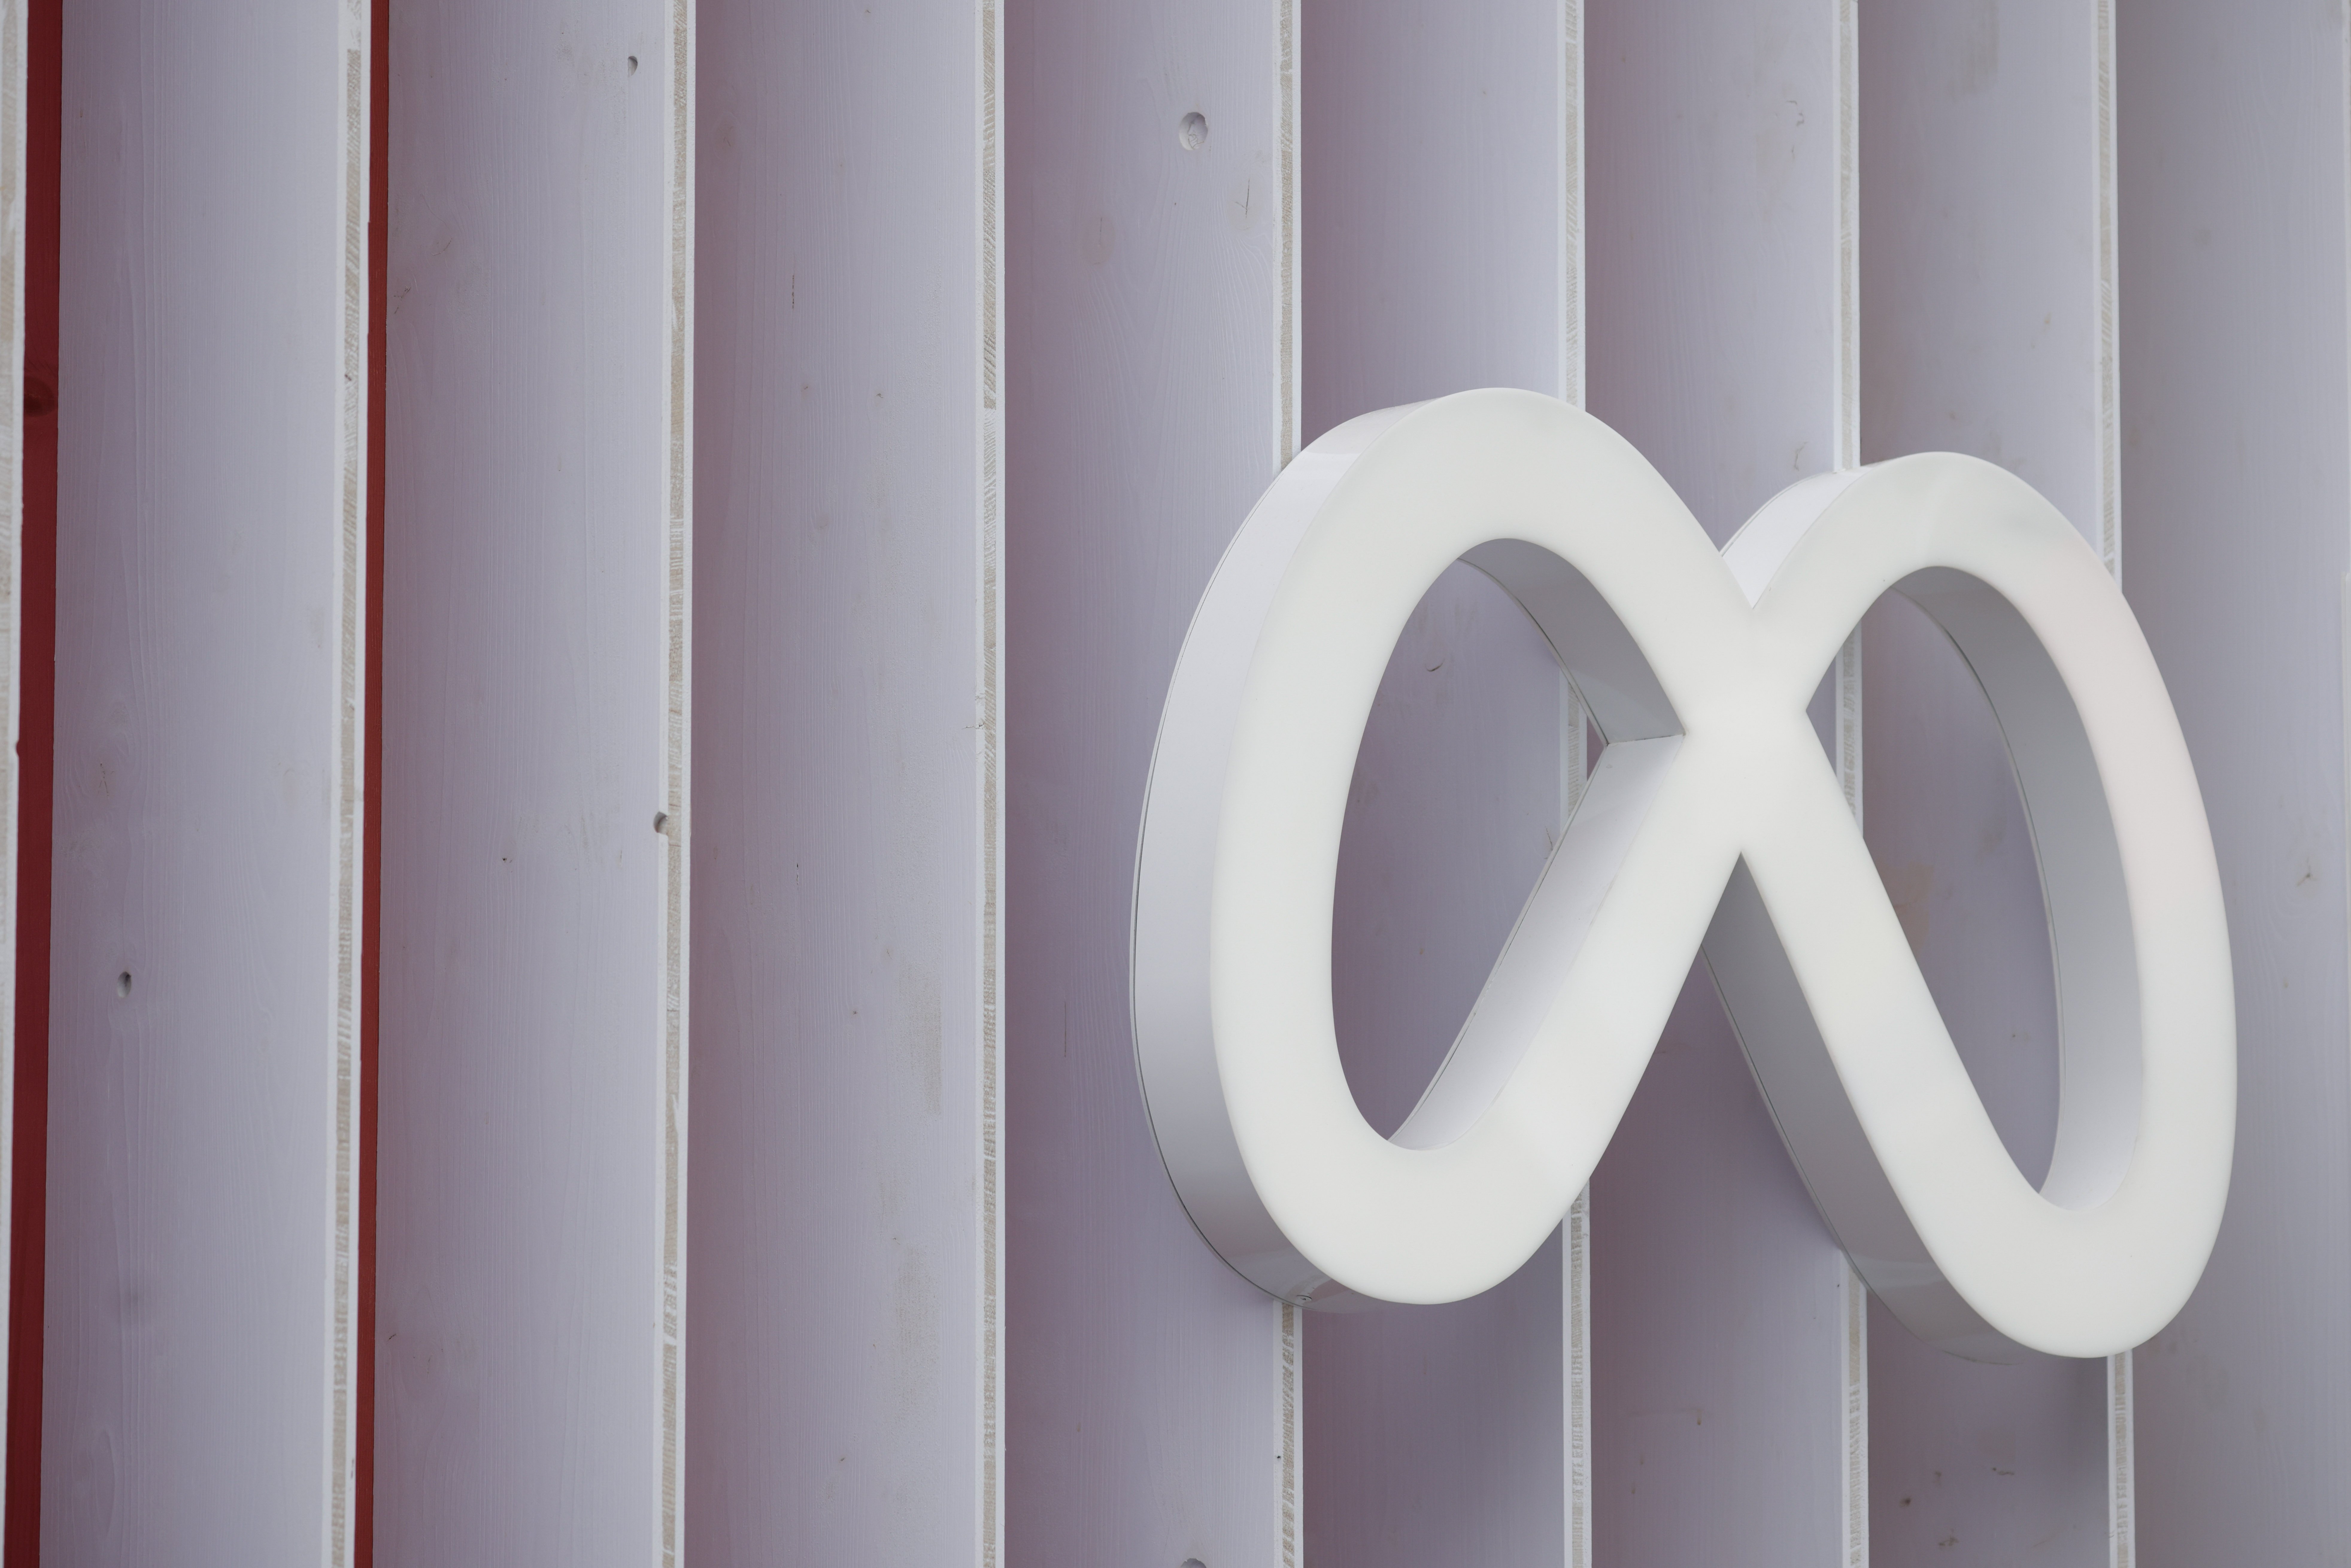 A white Meta logo sign on a white-paneled wall.